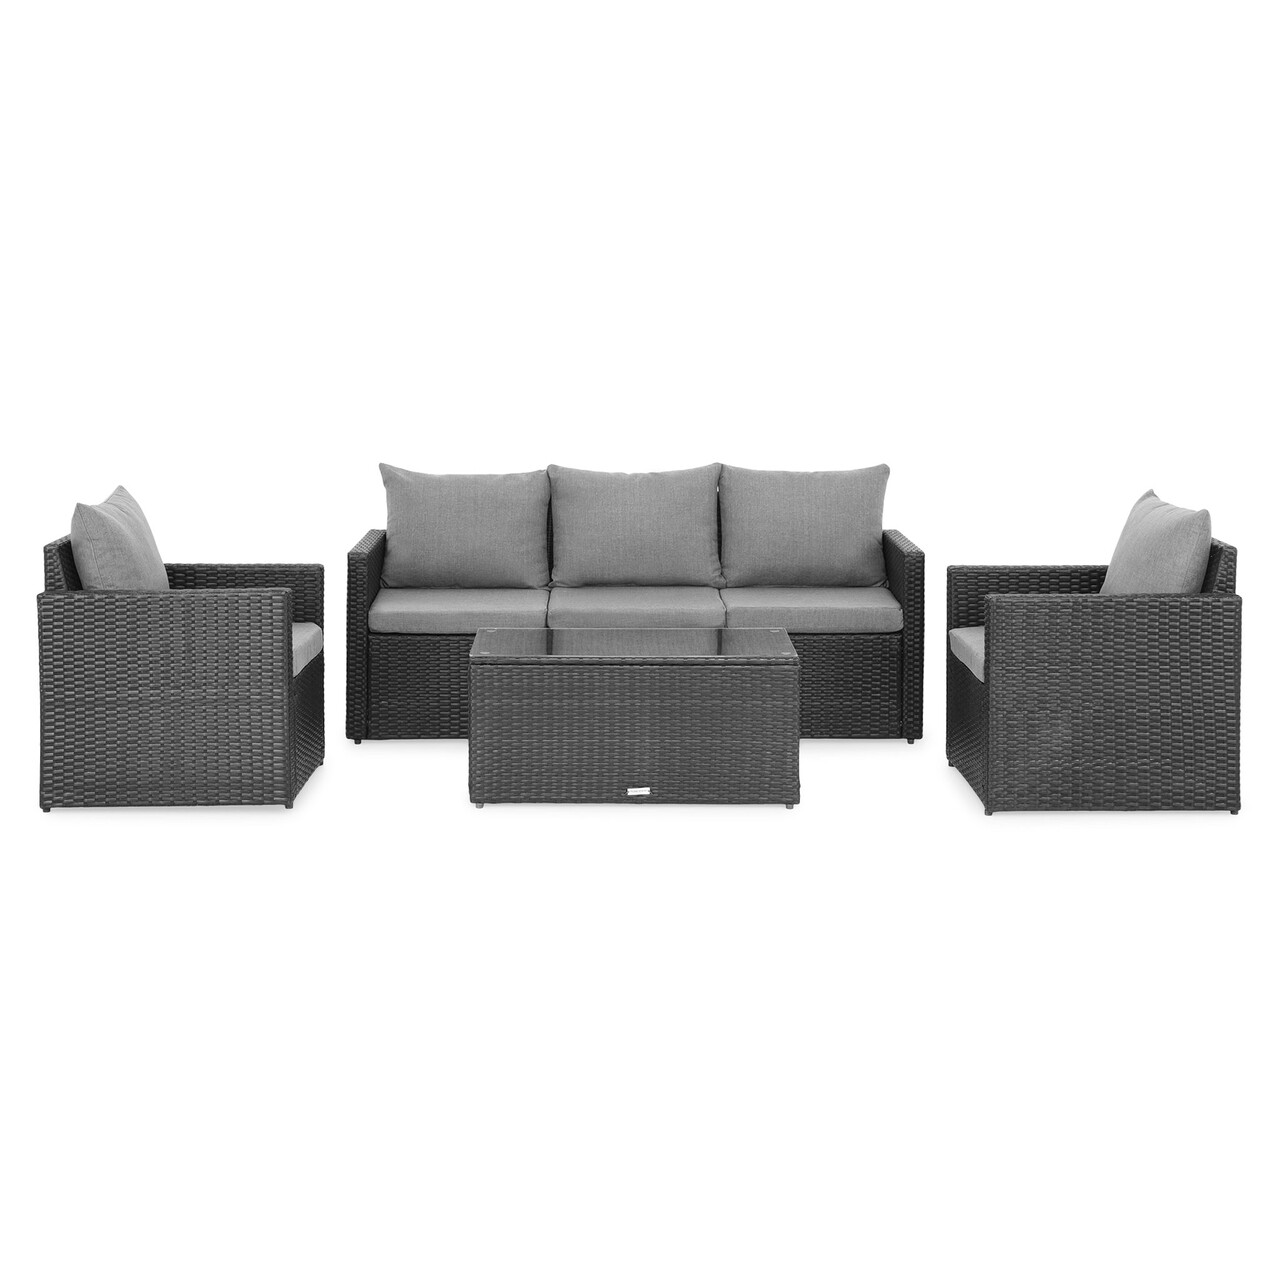 Marti Kerti/terasz bútor szett, 2 fotel + kanapé + asztalka, acél, szürke/fekete